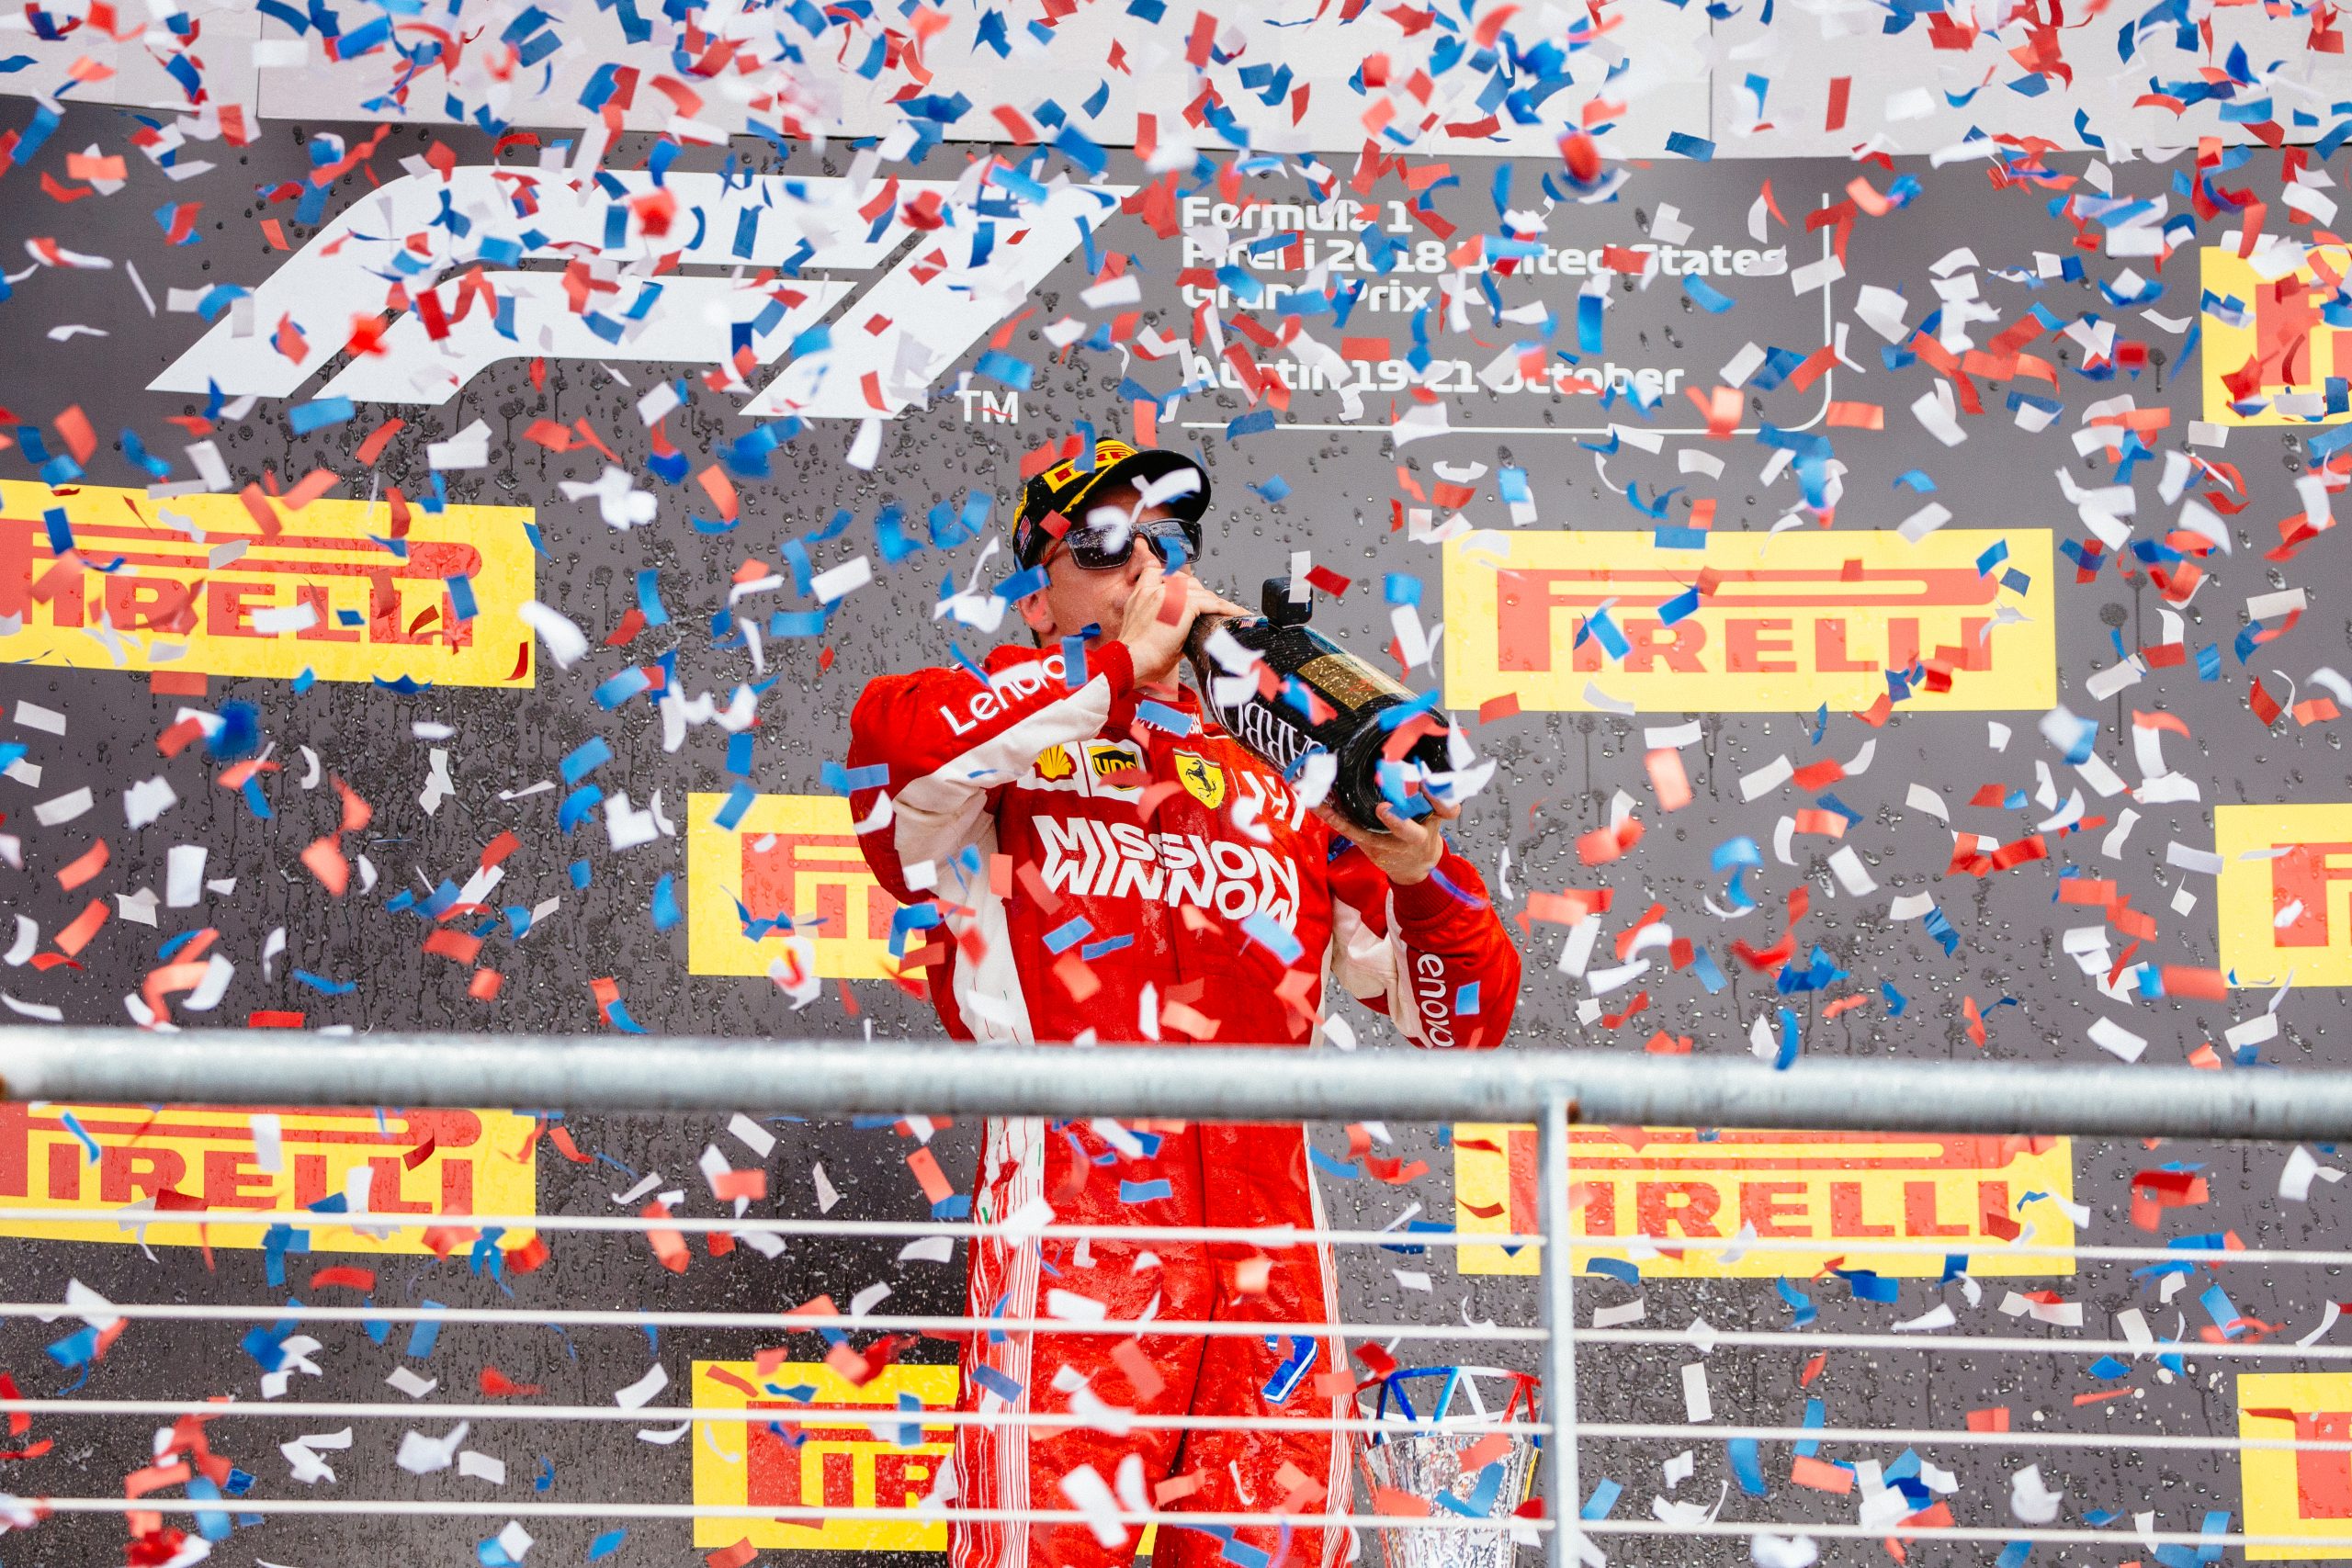 Kimi Raikonnen, winner of the Formula 1 Pirelli 2018 United States Grand Prix